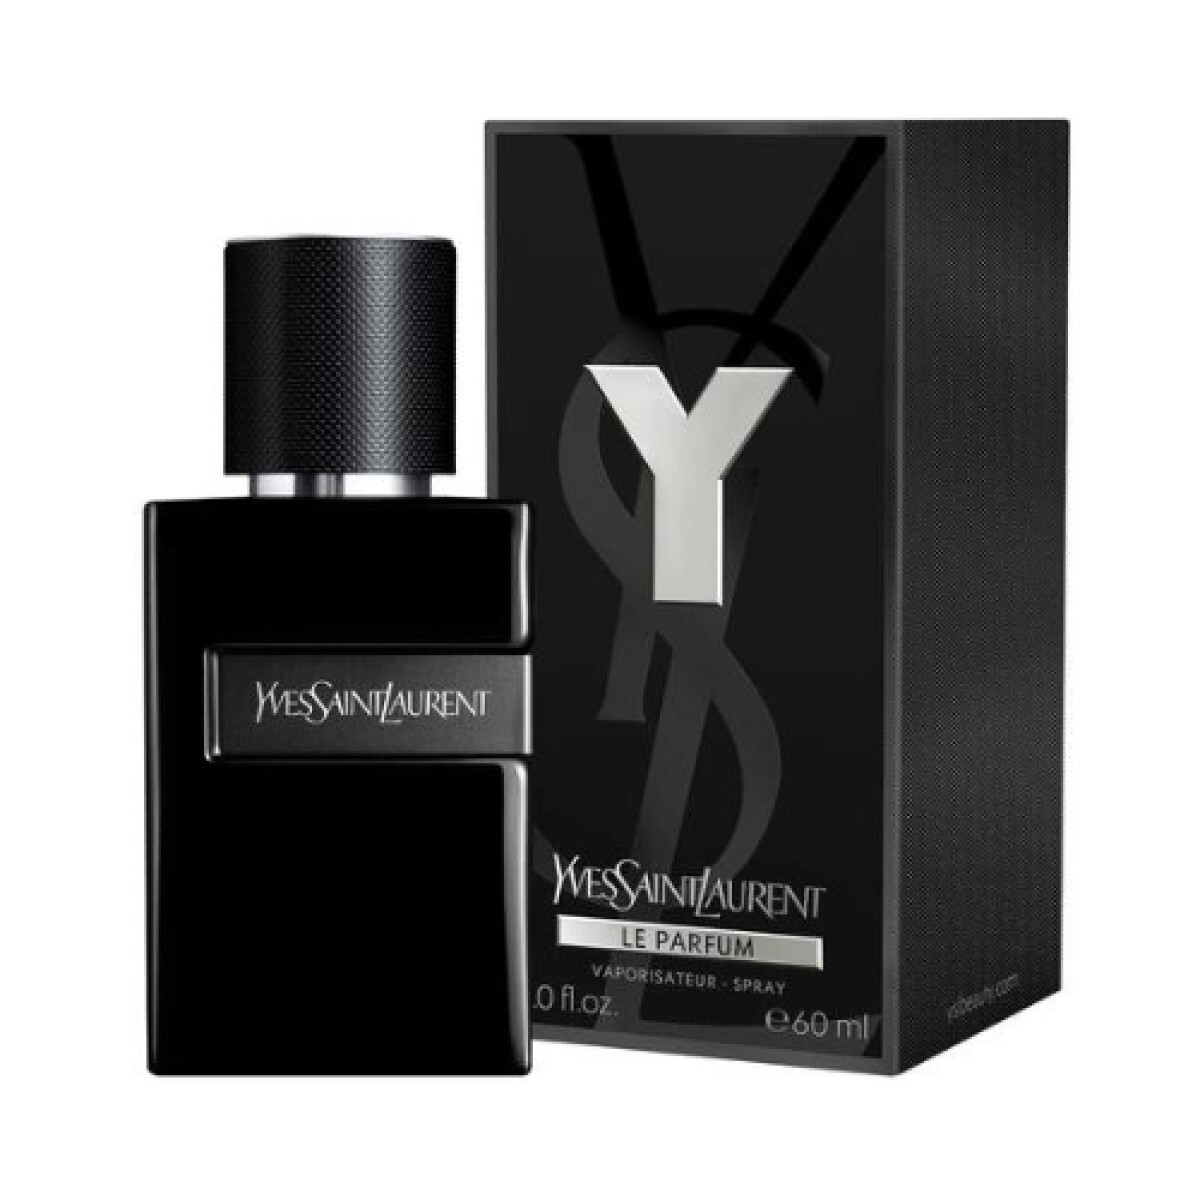 Y Yves Saint Laurent Le parfum - 60 ml 